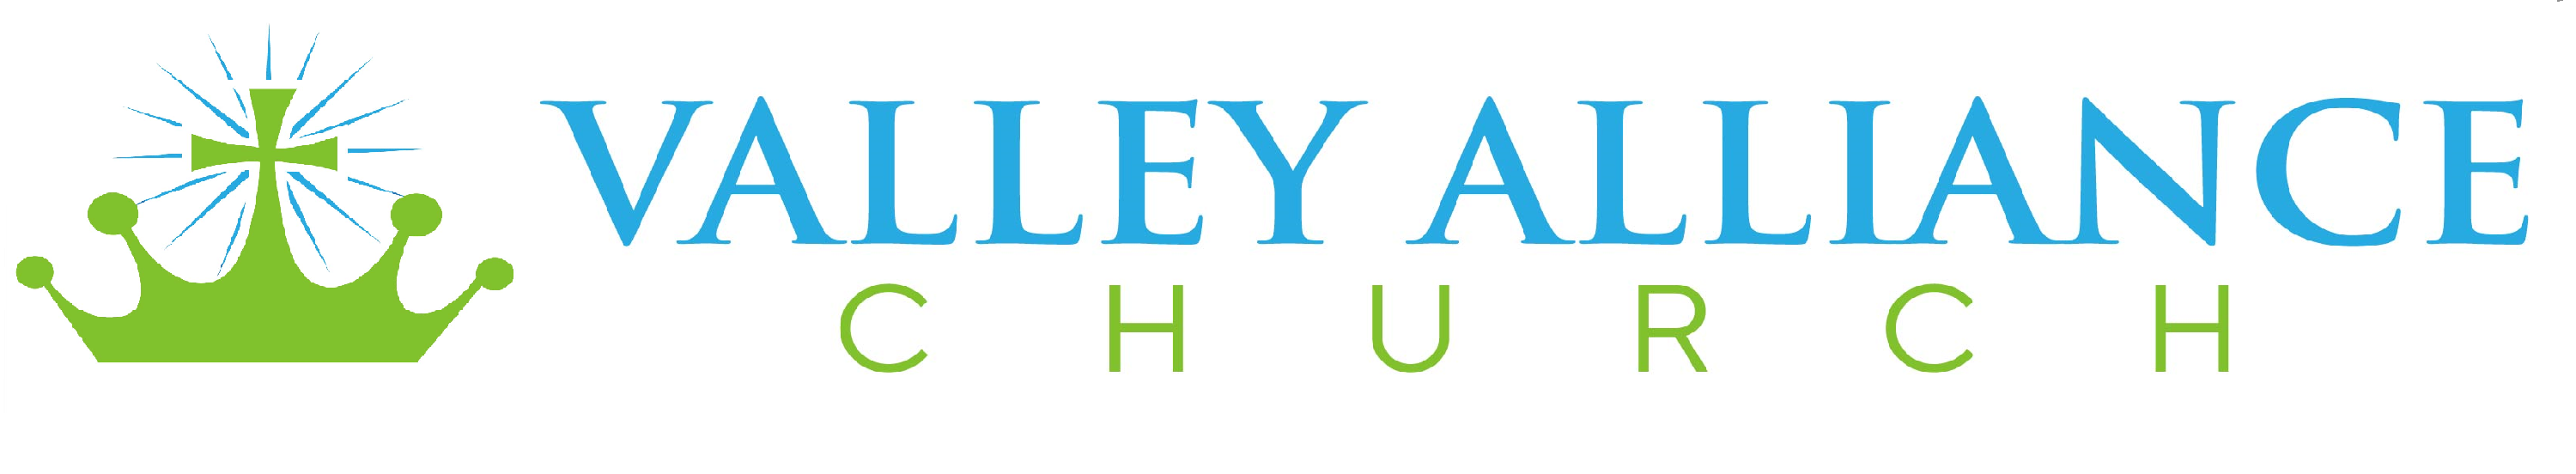 Valley Alliance Church logo